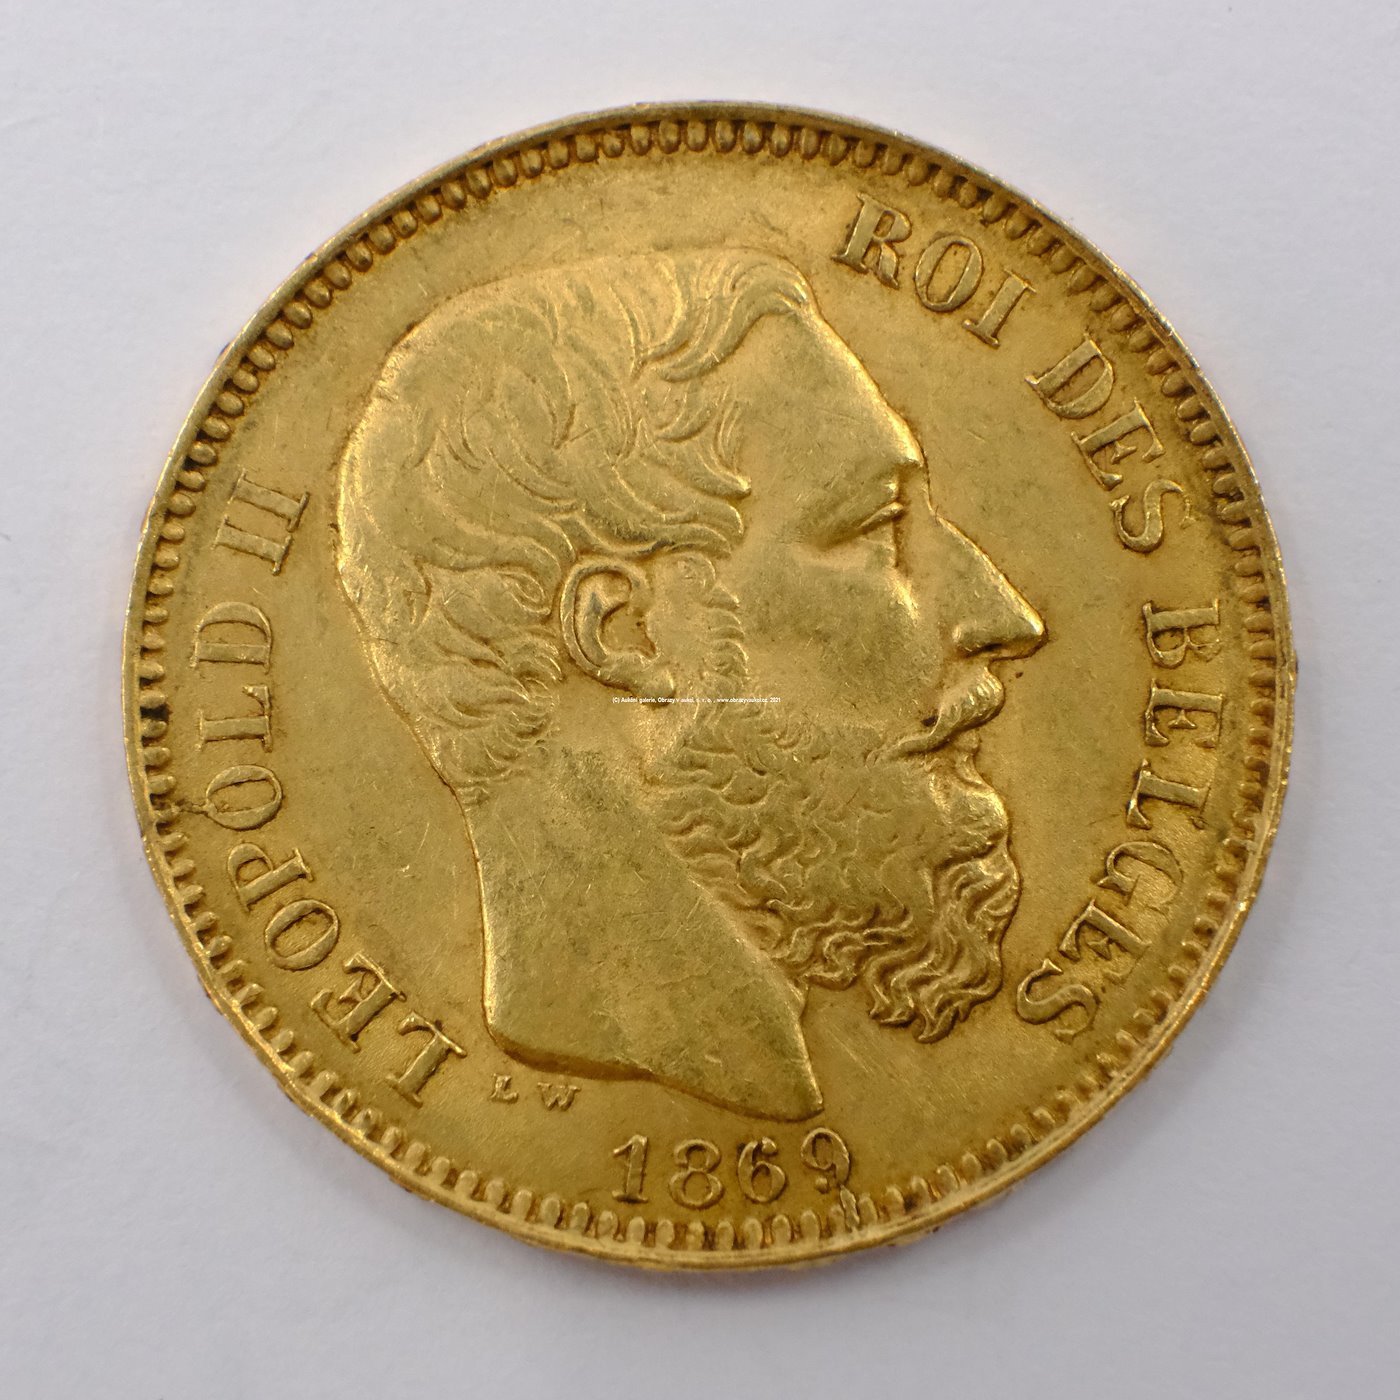 .. - Belgie zlatý 20 frank Leopold II. 1869. Zlato 900/1000, hrubá hmotnost 6,45g